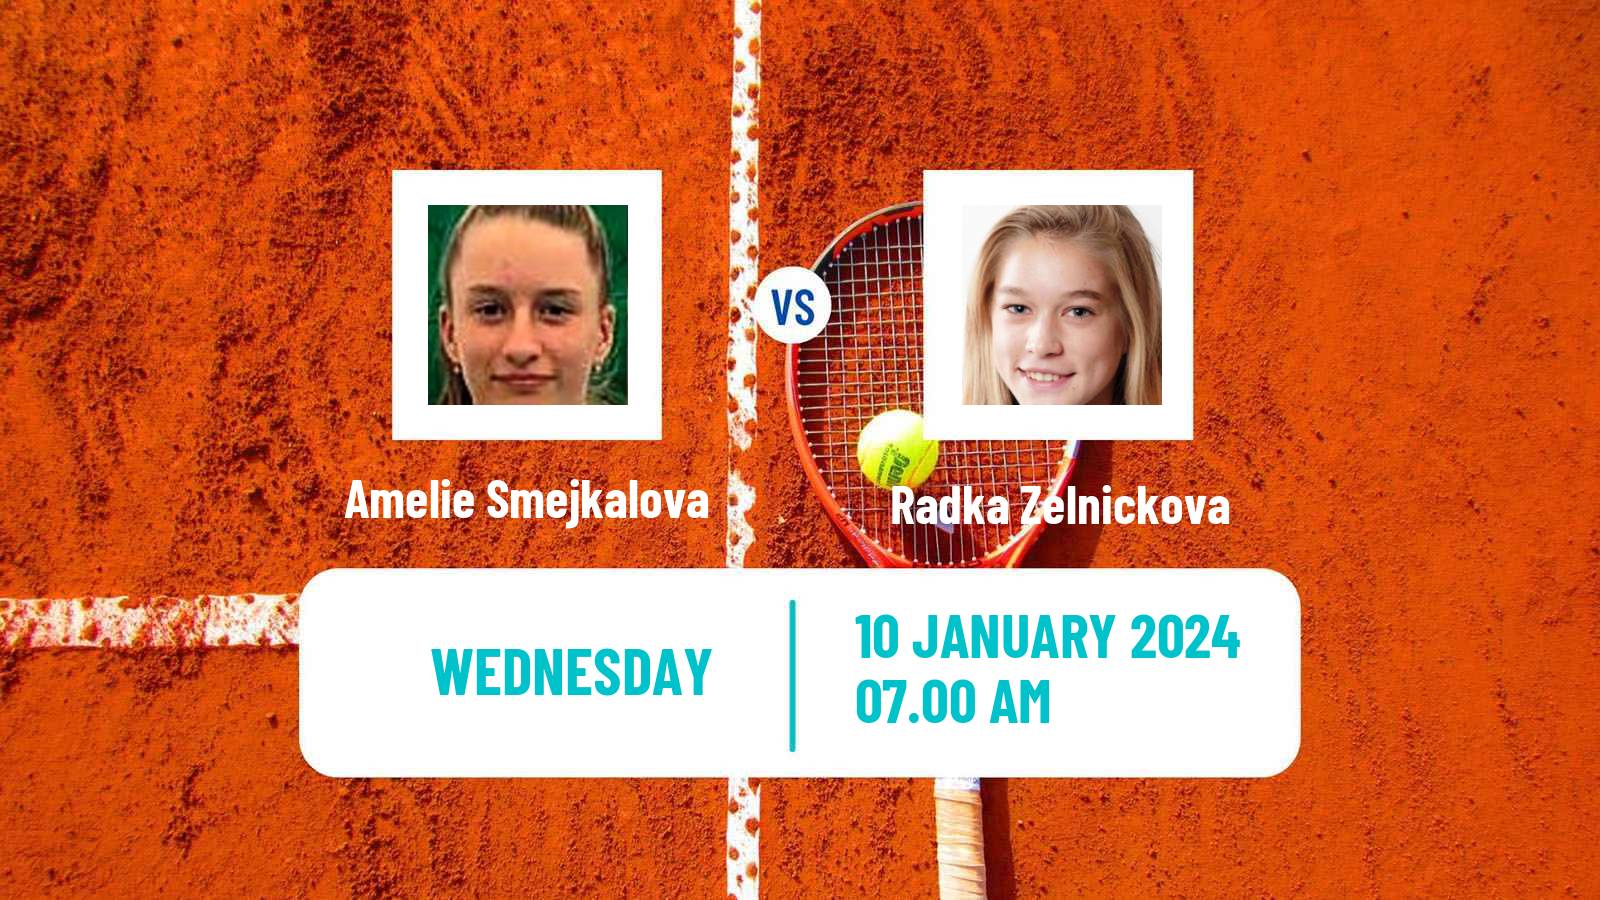 Tennis ITF W15 Monastir 2 Women Amelie Smejkalova - Radka Zelnickova